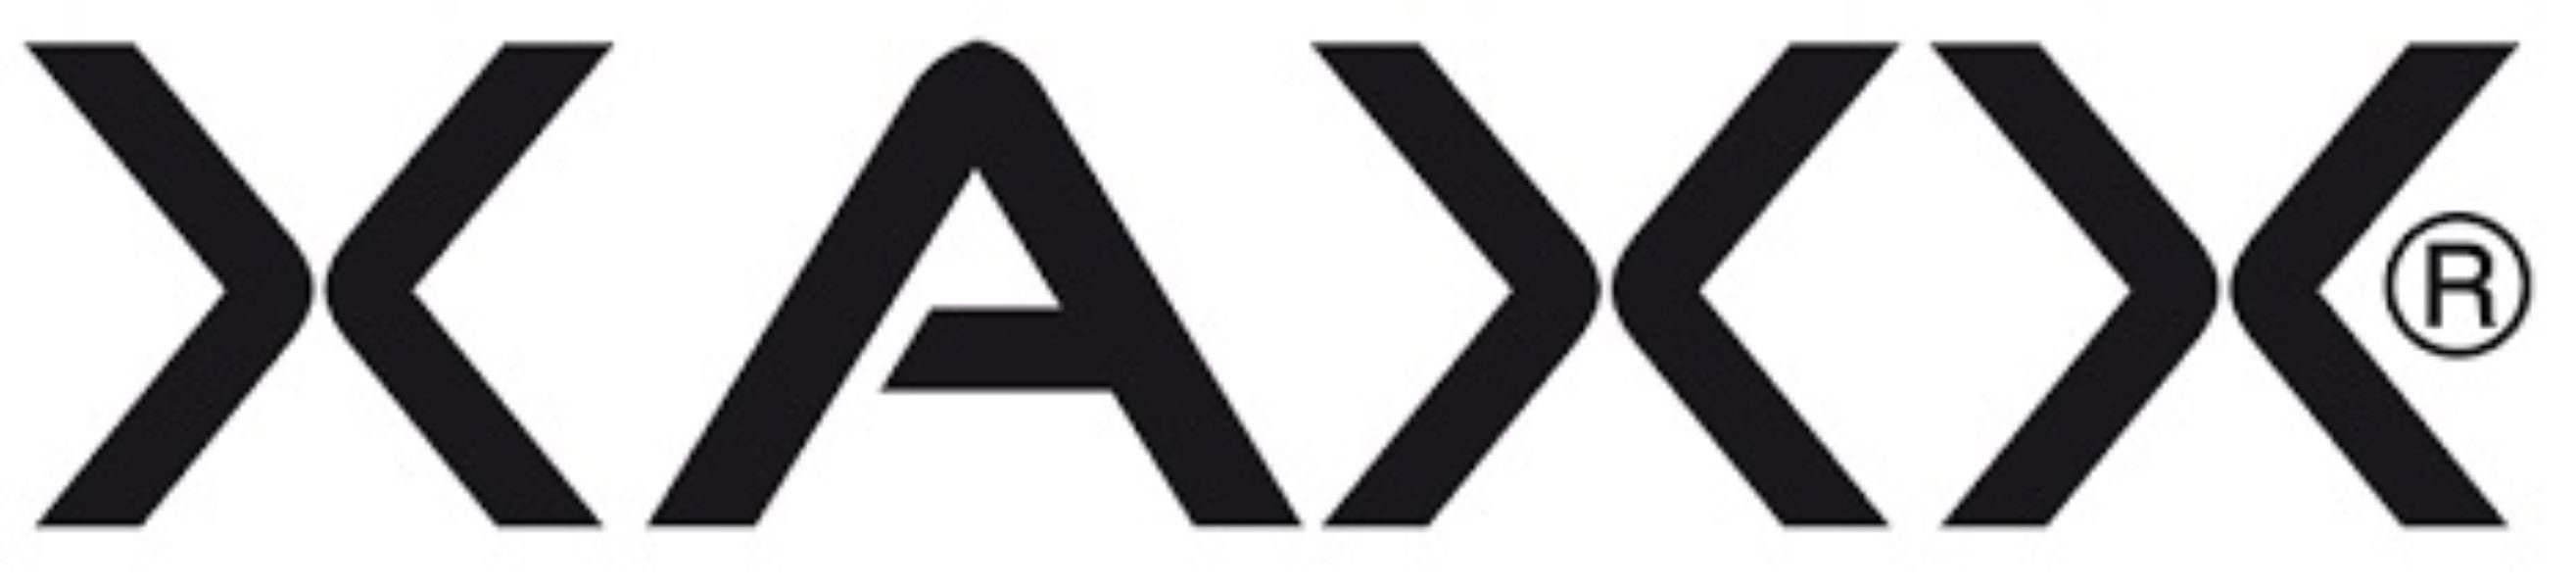 XAXX